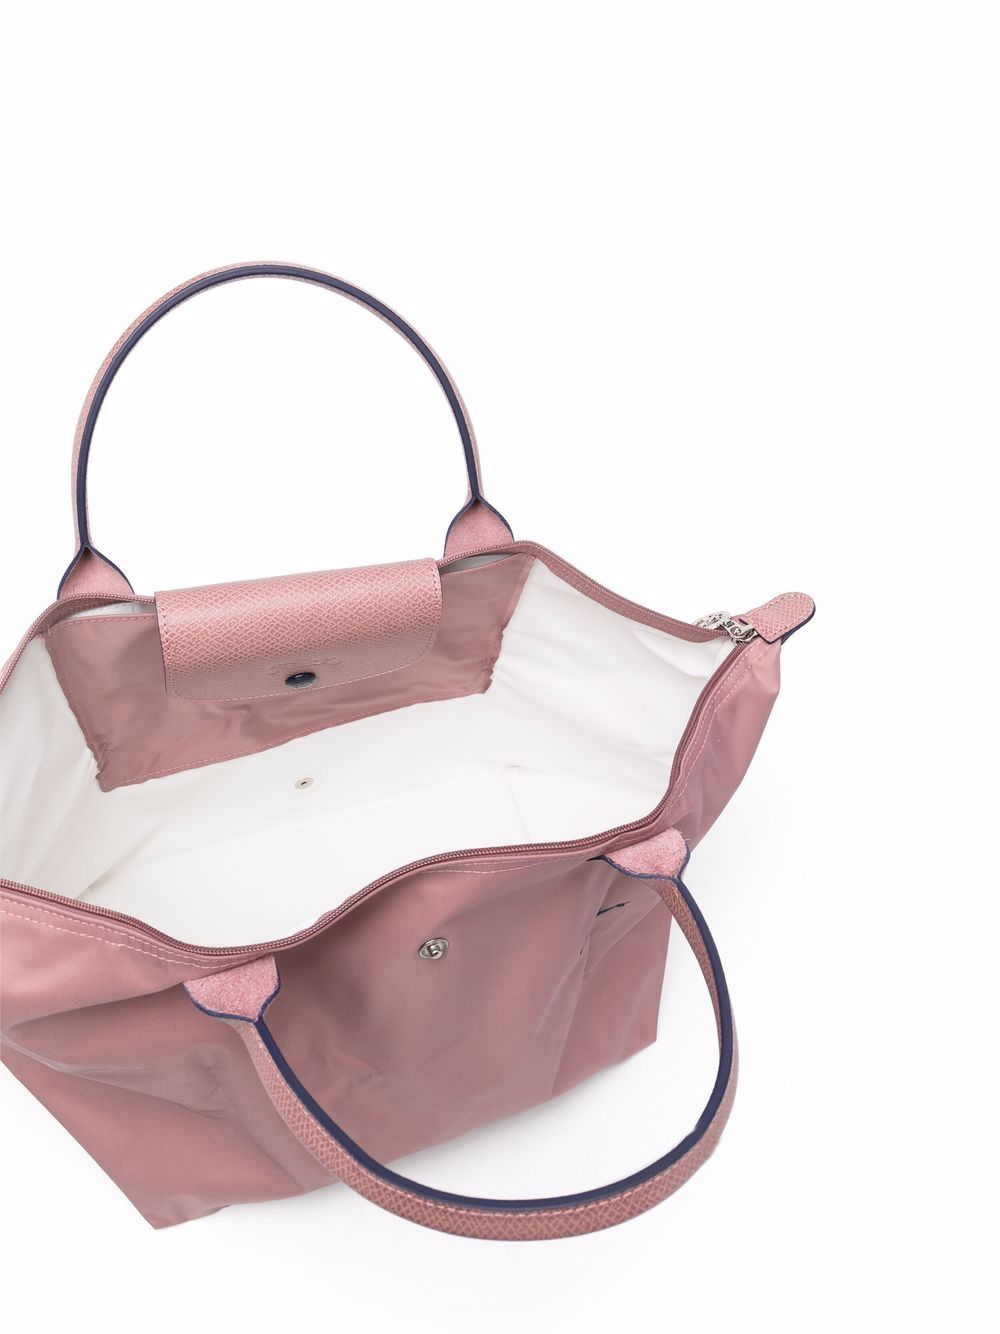 фото Longchamp сумка-тоут le pliage среднего размера